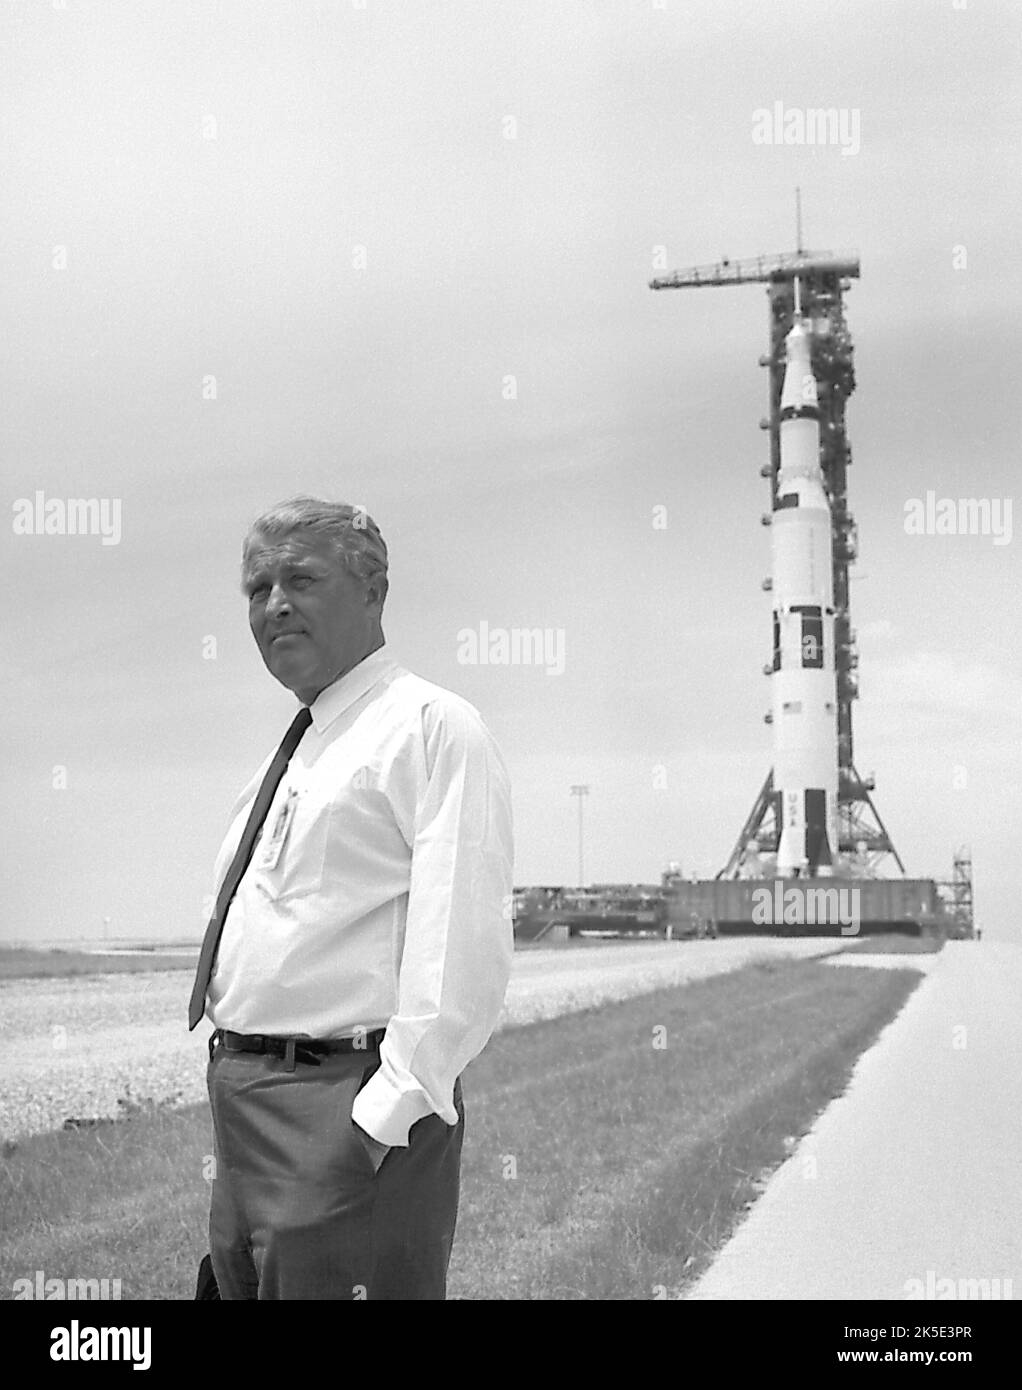 Prêt à aller sur la Lune. Wernher von Braun, célèbre spécialiste de la roquette, pose devant le véhicule Saturn V en cours de refonte pour la mission historique d'atterrissage lunaire Apollo 11. Le véhicule Saturn V a été développé par le Marshall Space Flight Centre à Huntsville, en Alabama, sous la direction de von Braun. Crédit: NASA Banque D'Images